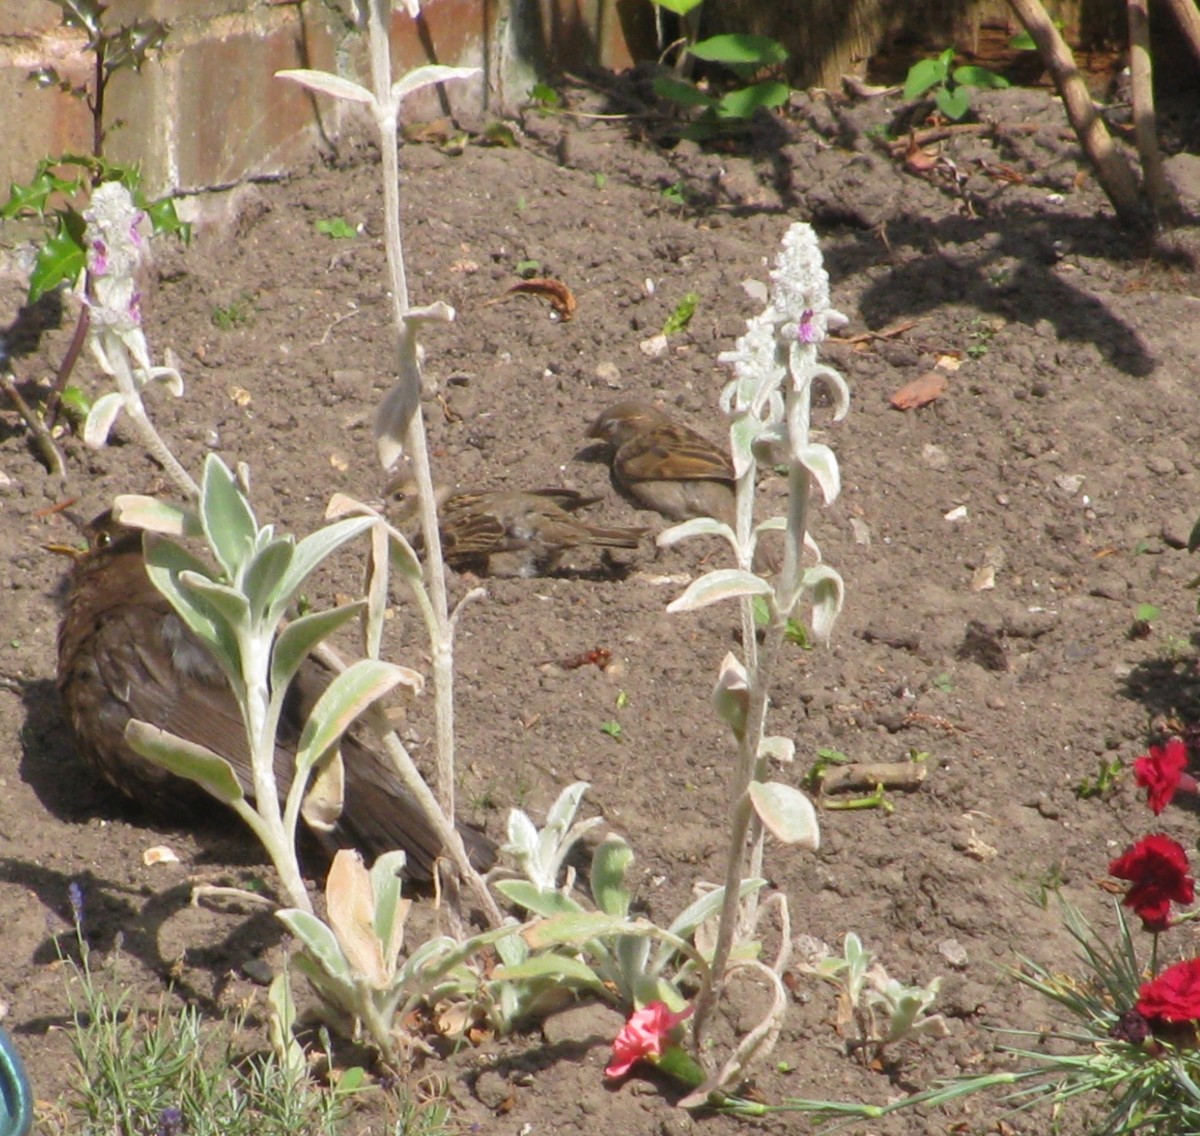 Sparrows have a Dust Bath as Blackbird looks on